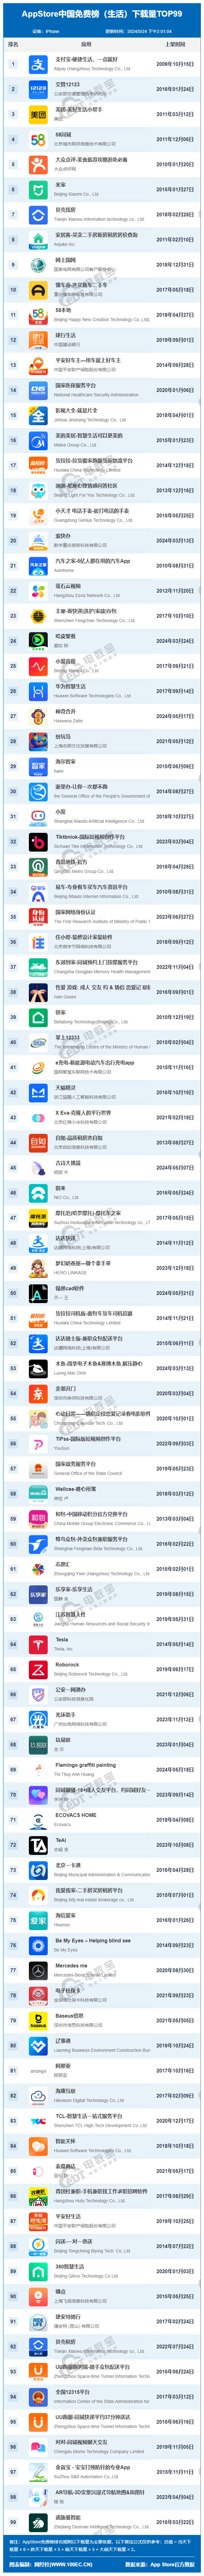 5月appstore中国免费榜(生活)top99:支付宝 美团位居前三